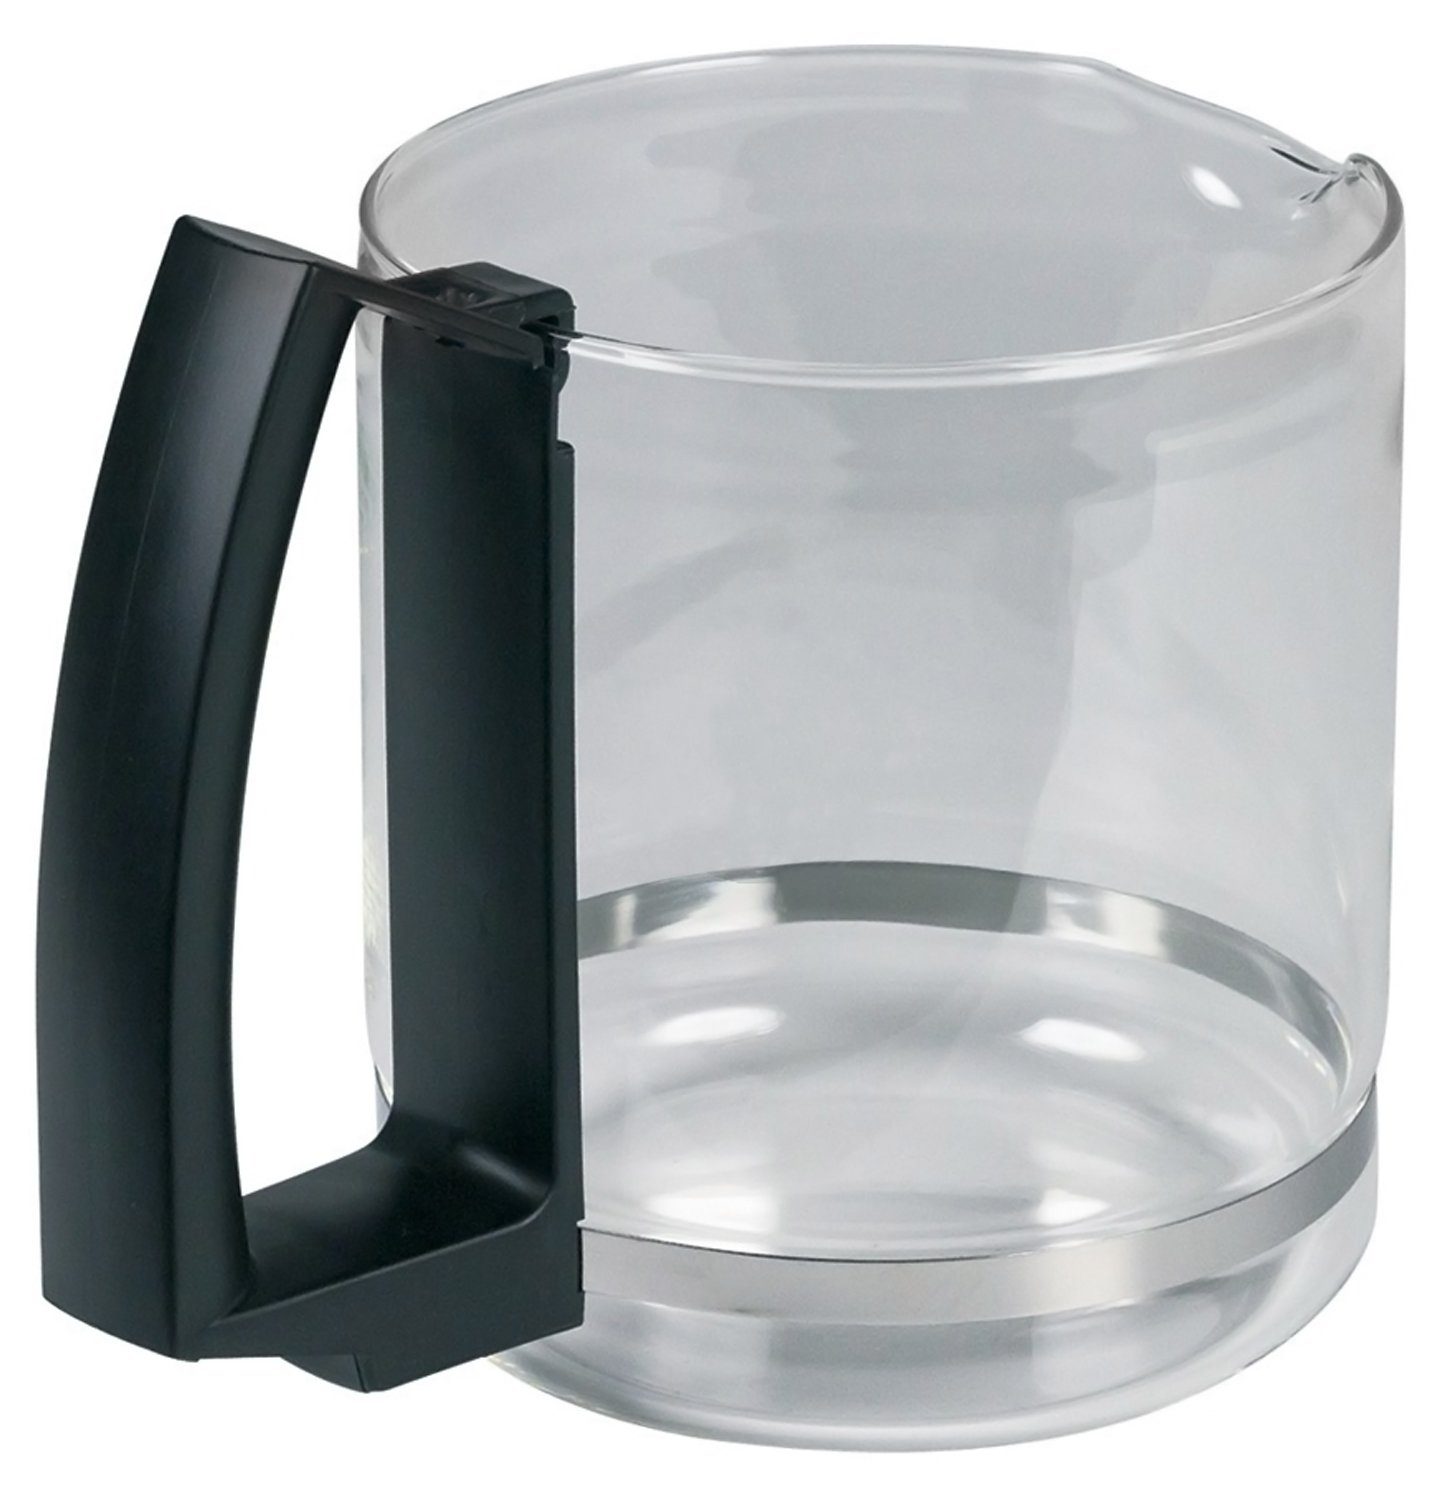 - 12 8 Filterkaffeemaschine, MS-623057 Tassen für T8 Krups Kaffeekanne für Glaskanne